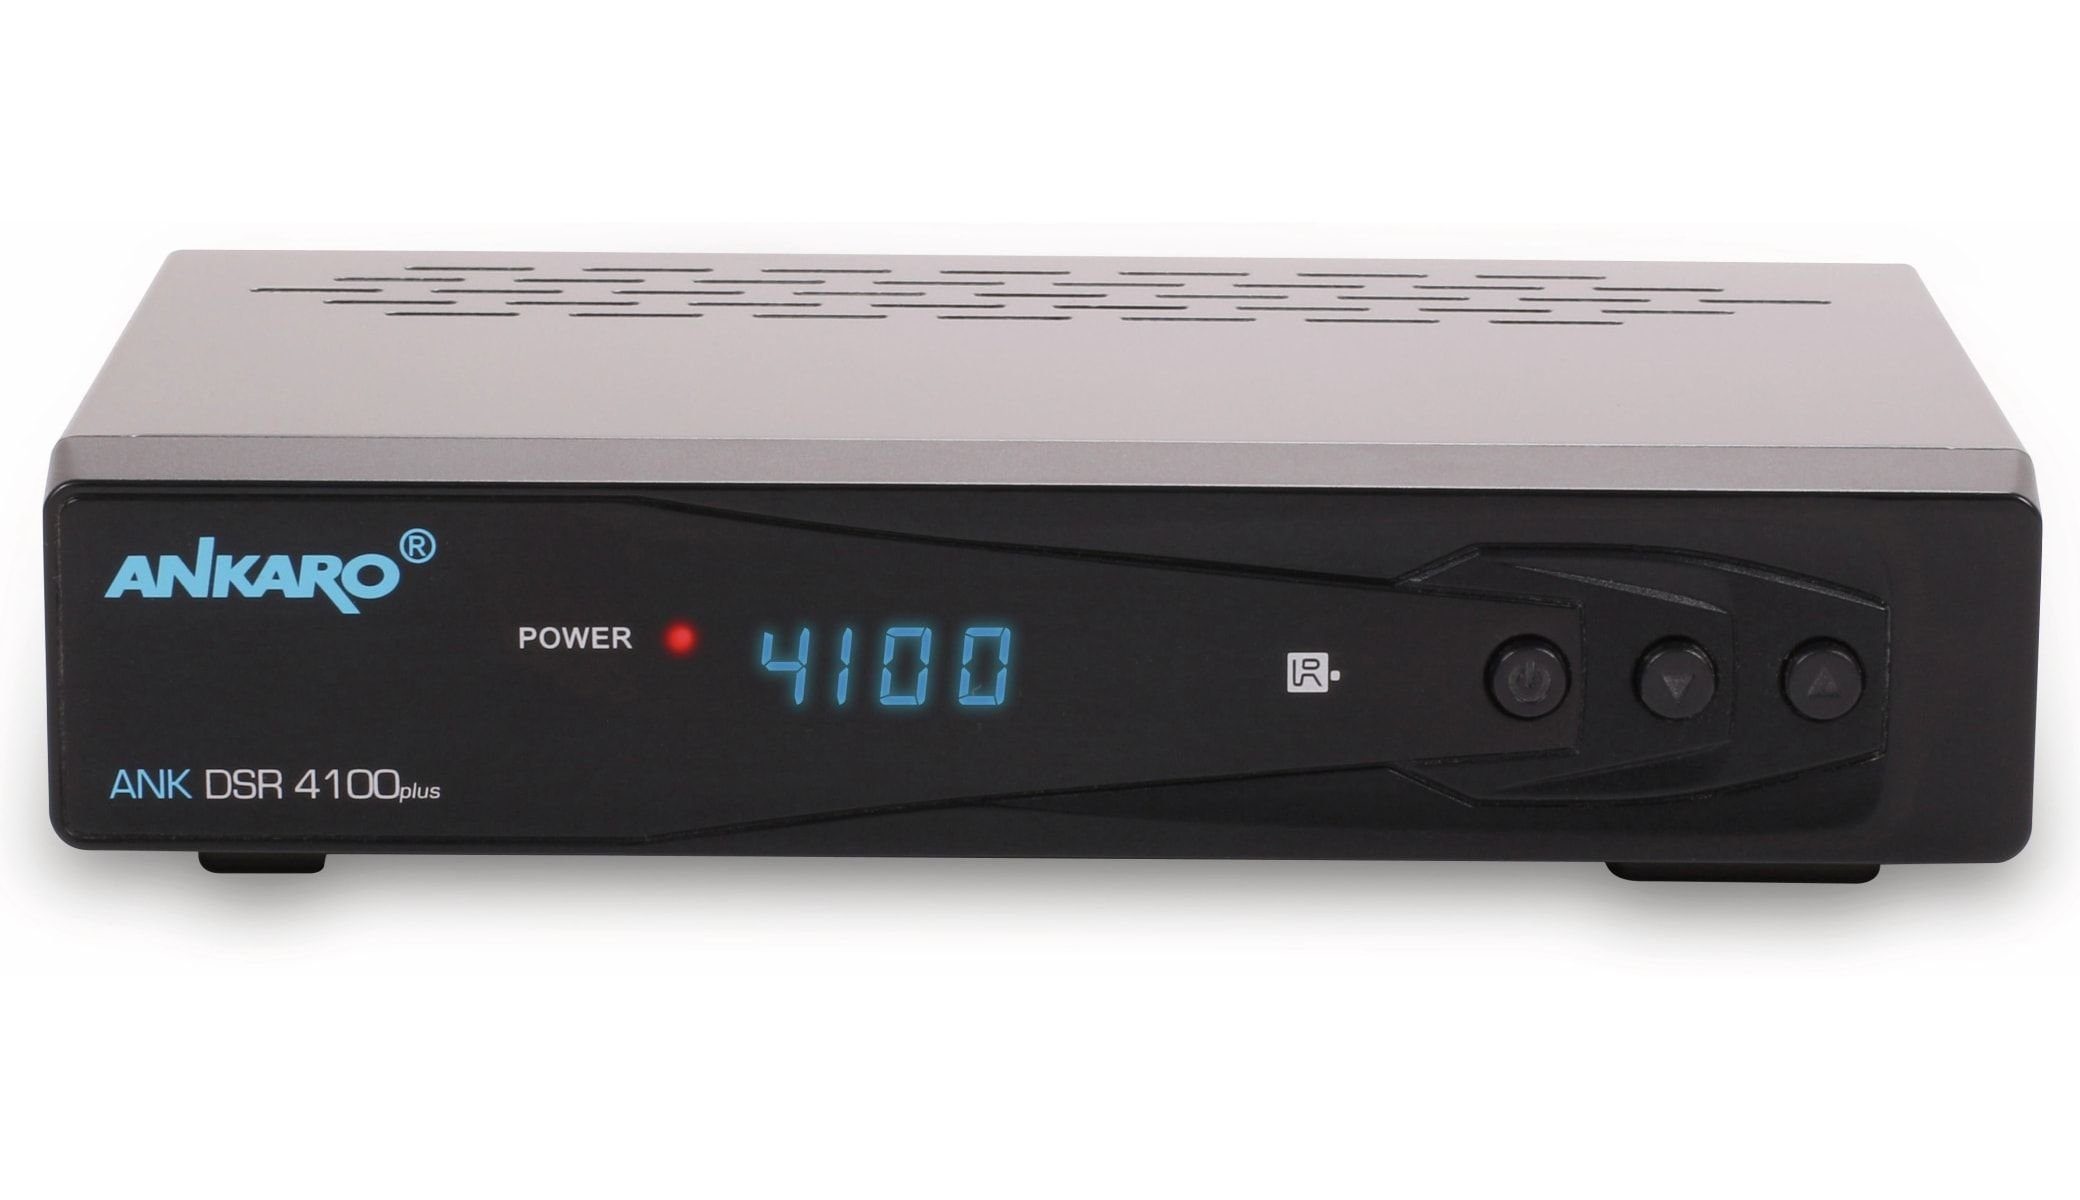 HDTV-Receiver DVB-S Satellitenreceiver 4100plus DSR ANKARO Ankaro